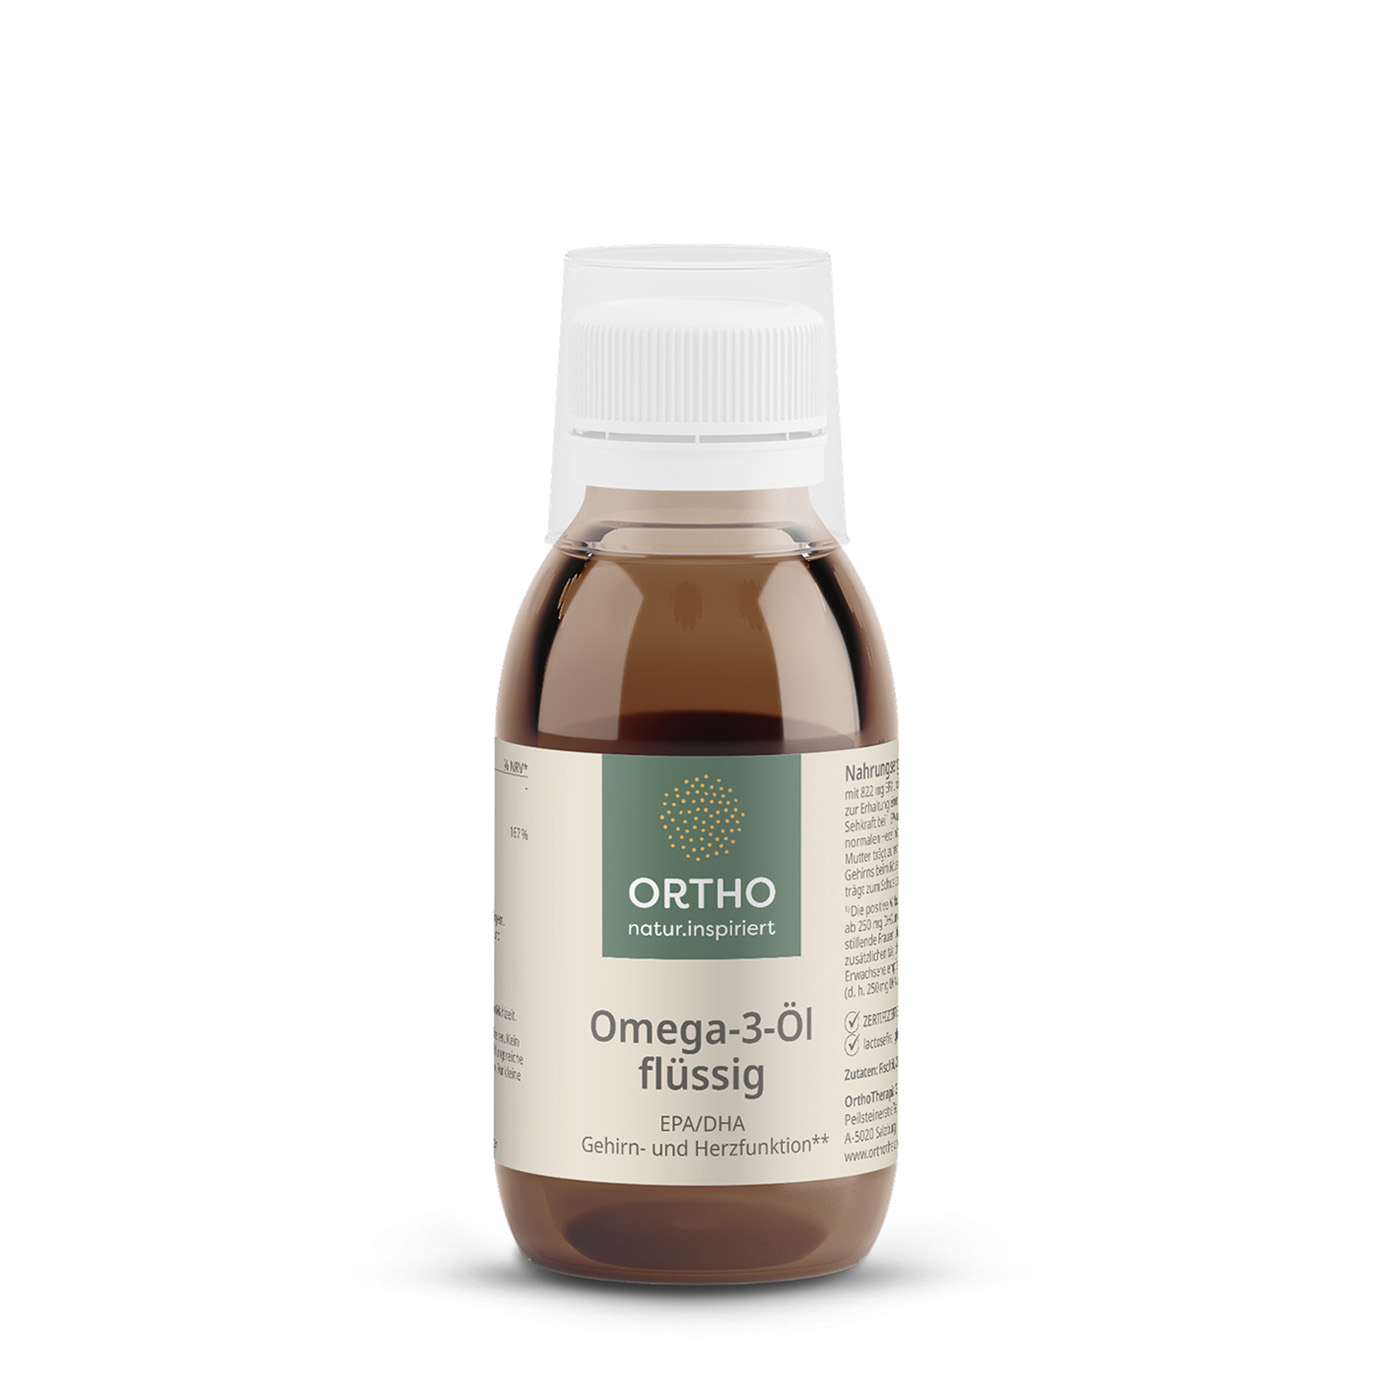 Omega-3-Öl flüssig Omega-3 Öl flüssig